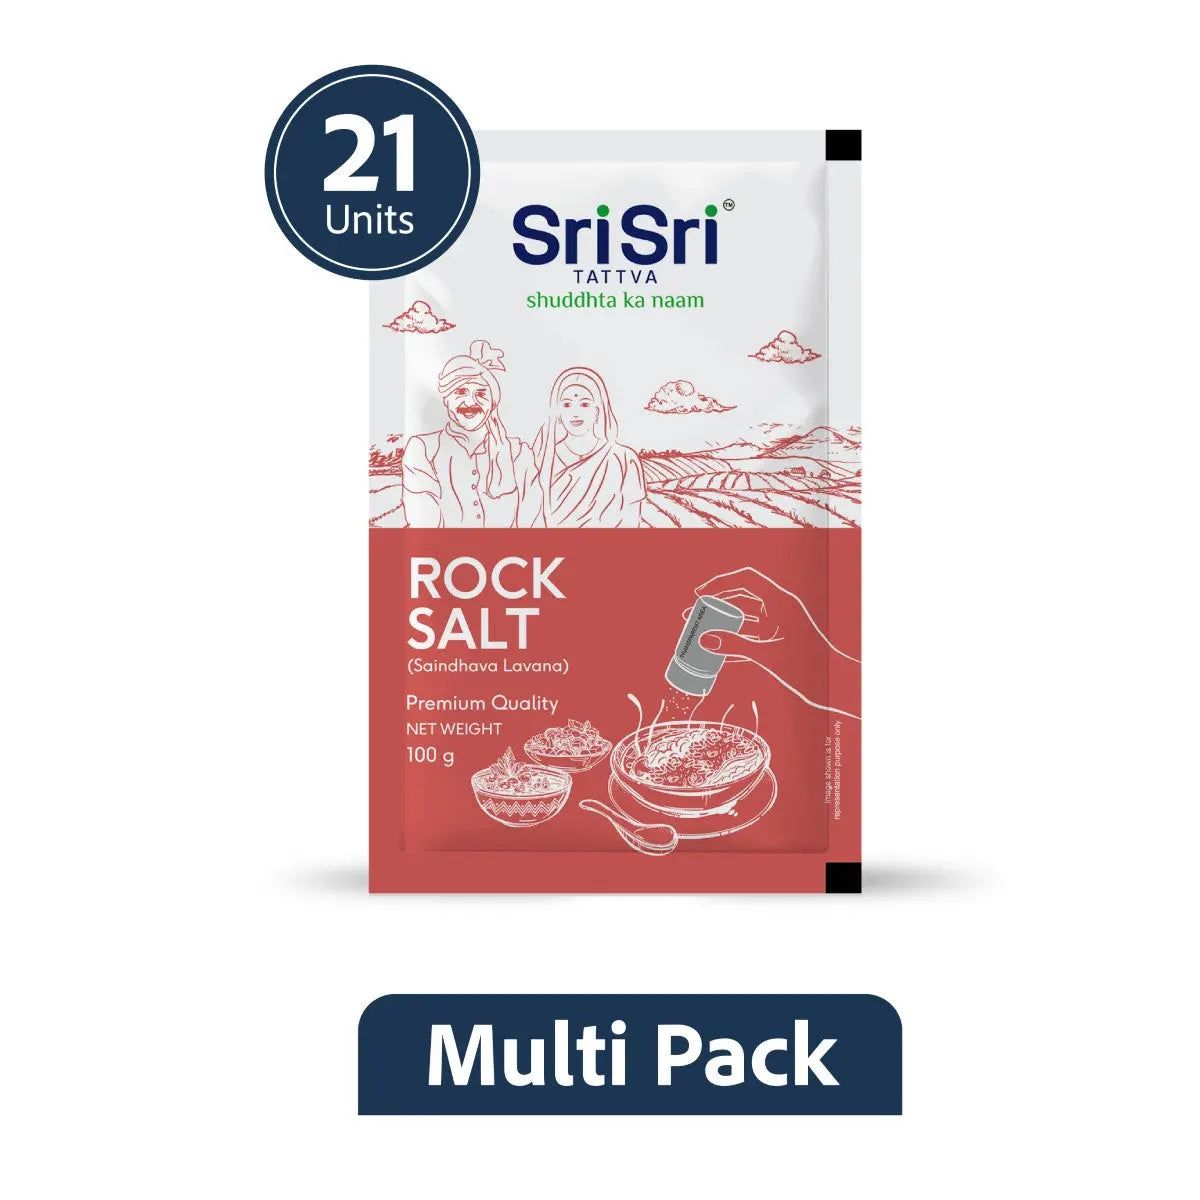 Sri Sri Tattva Rock Salt Premium Quality